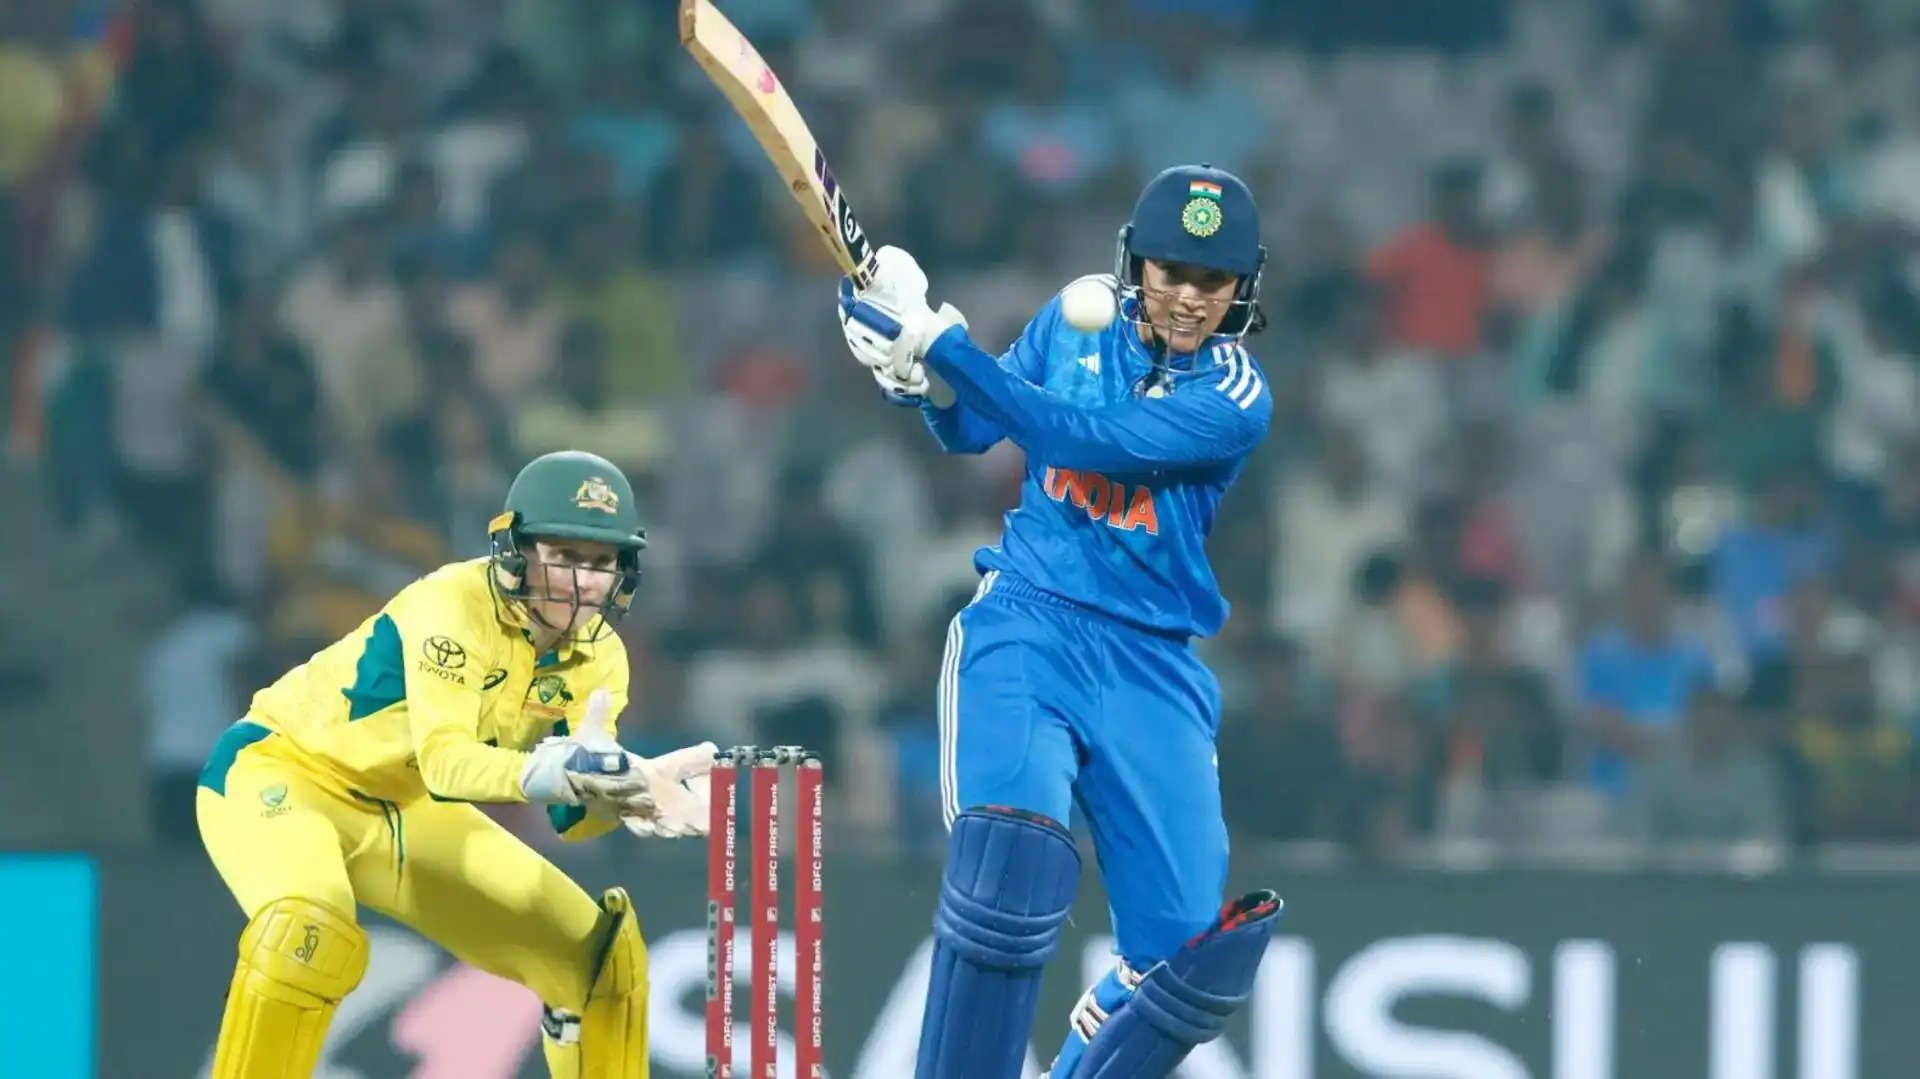 भारत और ऑस्ट्रेलिया की महिला क्रिकेट टीमों के बीच रोमांचक तीन मैचों की टी20 श्रृंखला का दूसरा मैच डीवाई पाटिल स्पोर्ट्स अकादमी, मुंबई में शुरू हुआ, जिसने एक कड़े मुकाबले की तैयारी कर दी। टॉस जीतकर गेंदबाजी करने के ऑस्ट्रेलियाई कप्तान एलिसा हीली के फैसले ने मुकाबले में दिलचस्प मोड़ ला दिया।